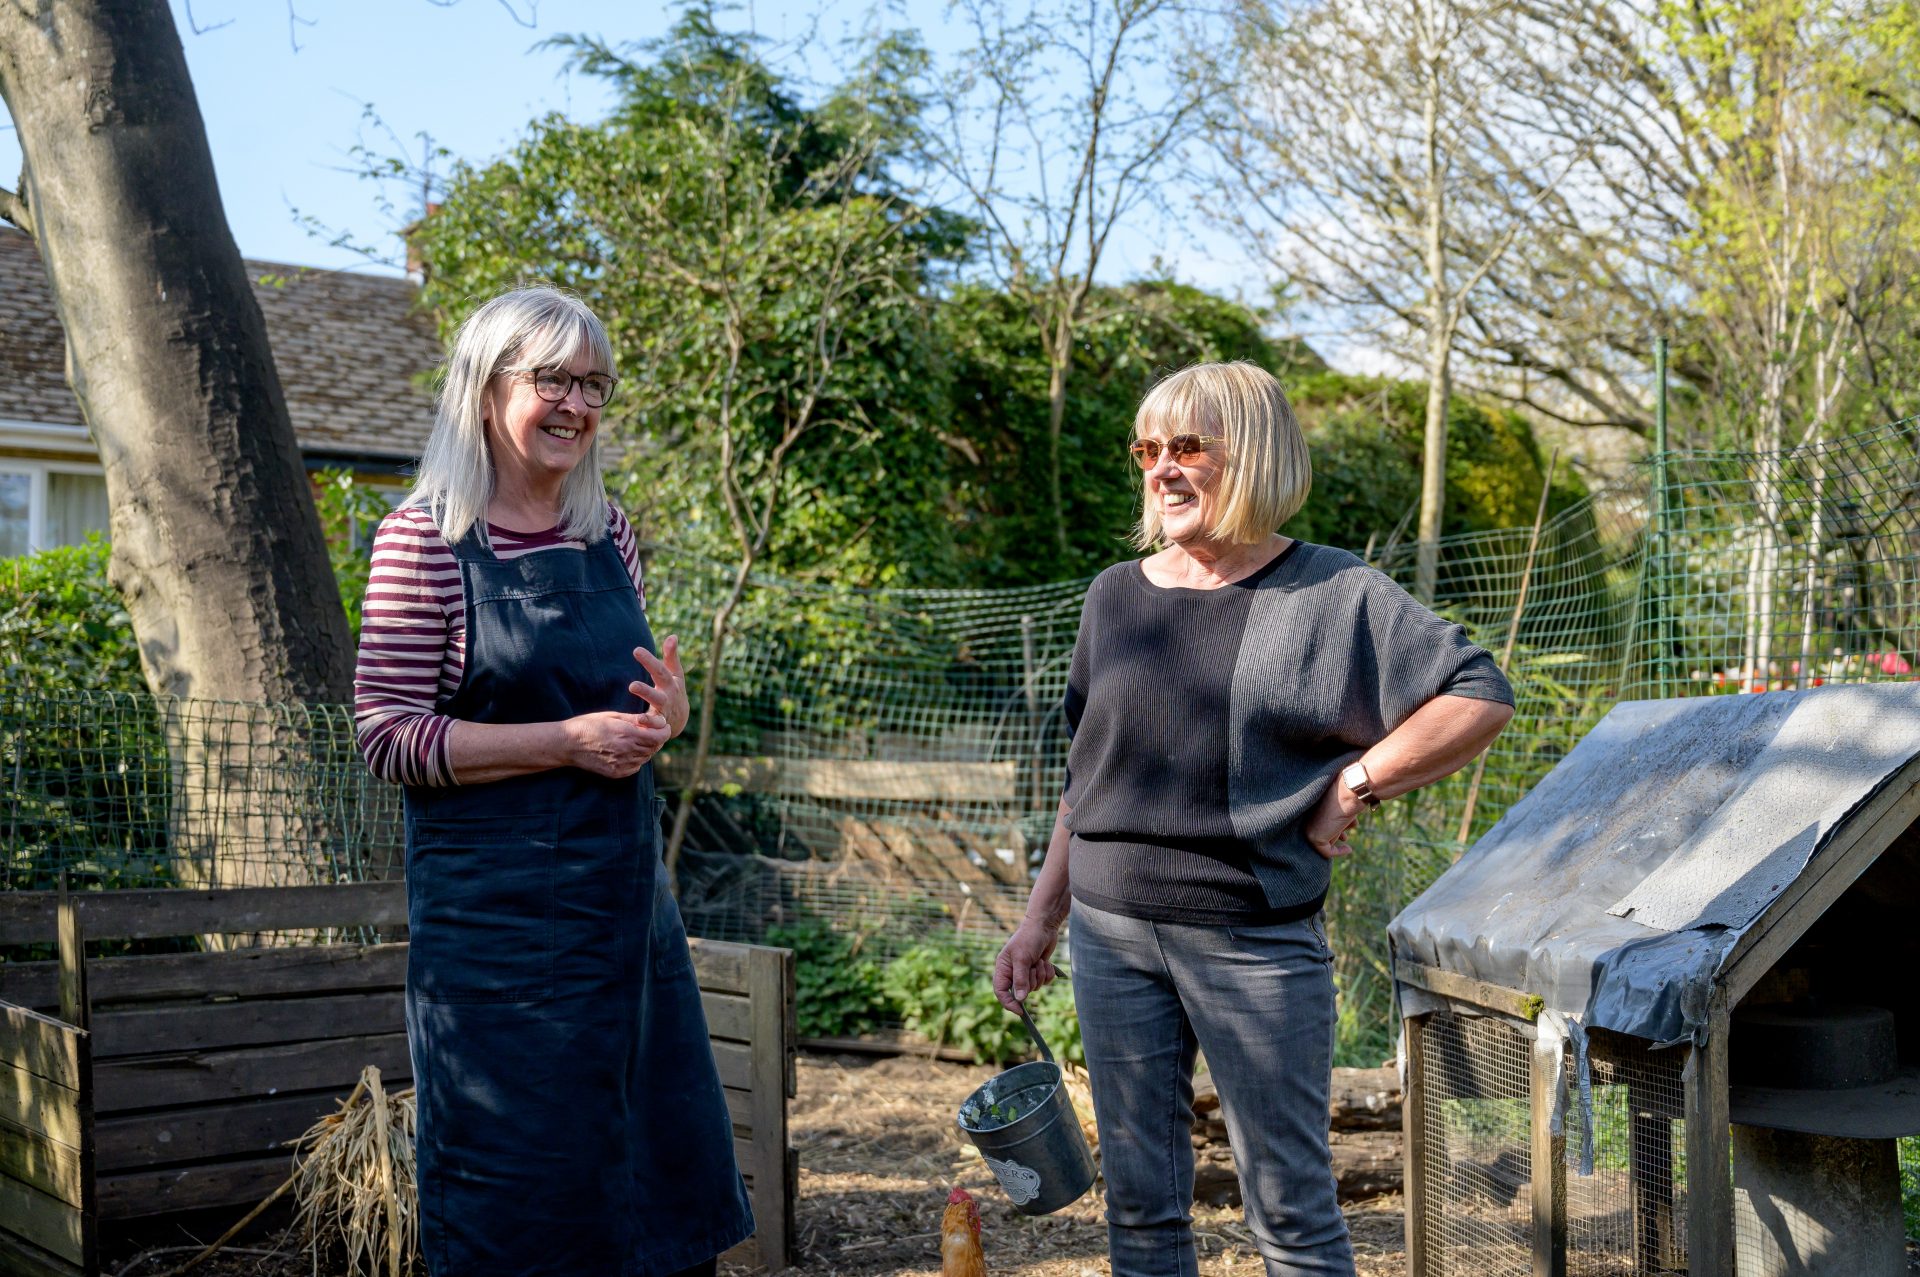 Deux femmes âgées se tiennent dans un jardin au soleil et discutent en riant.